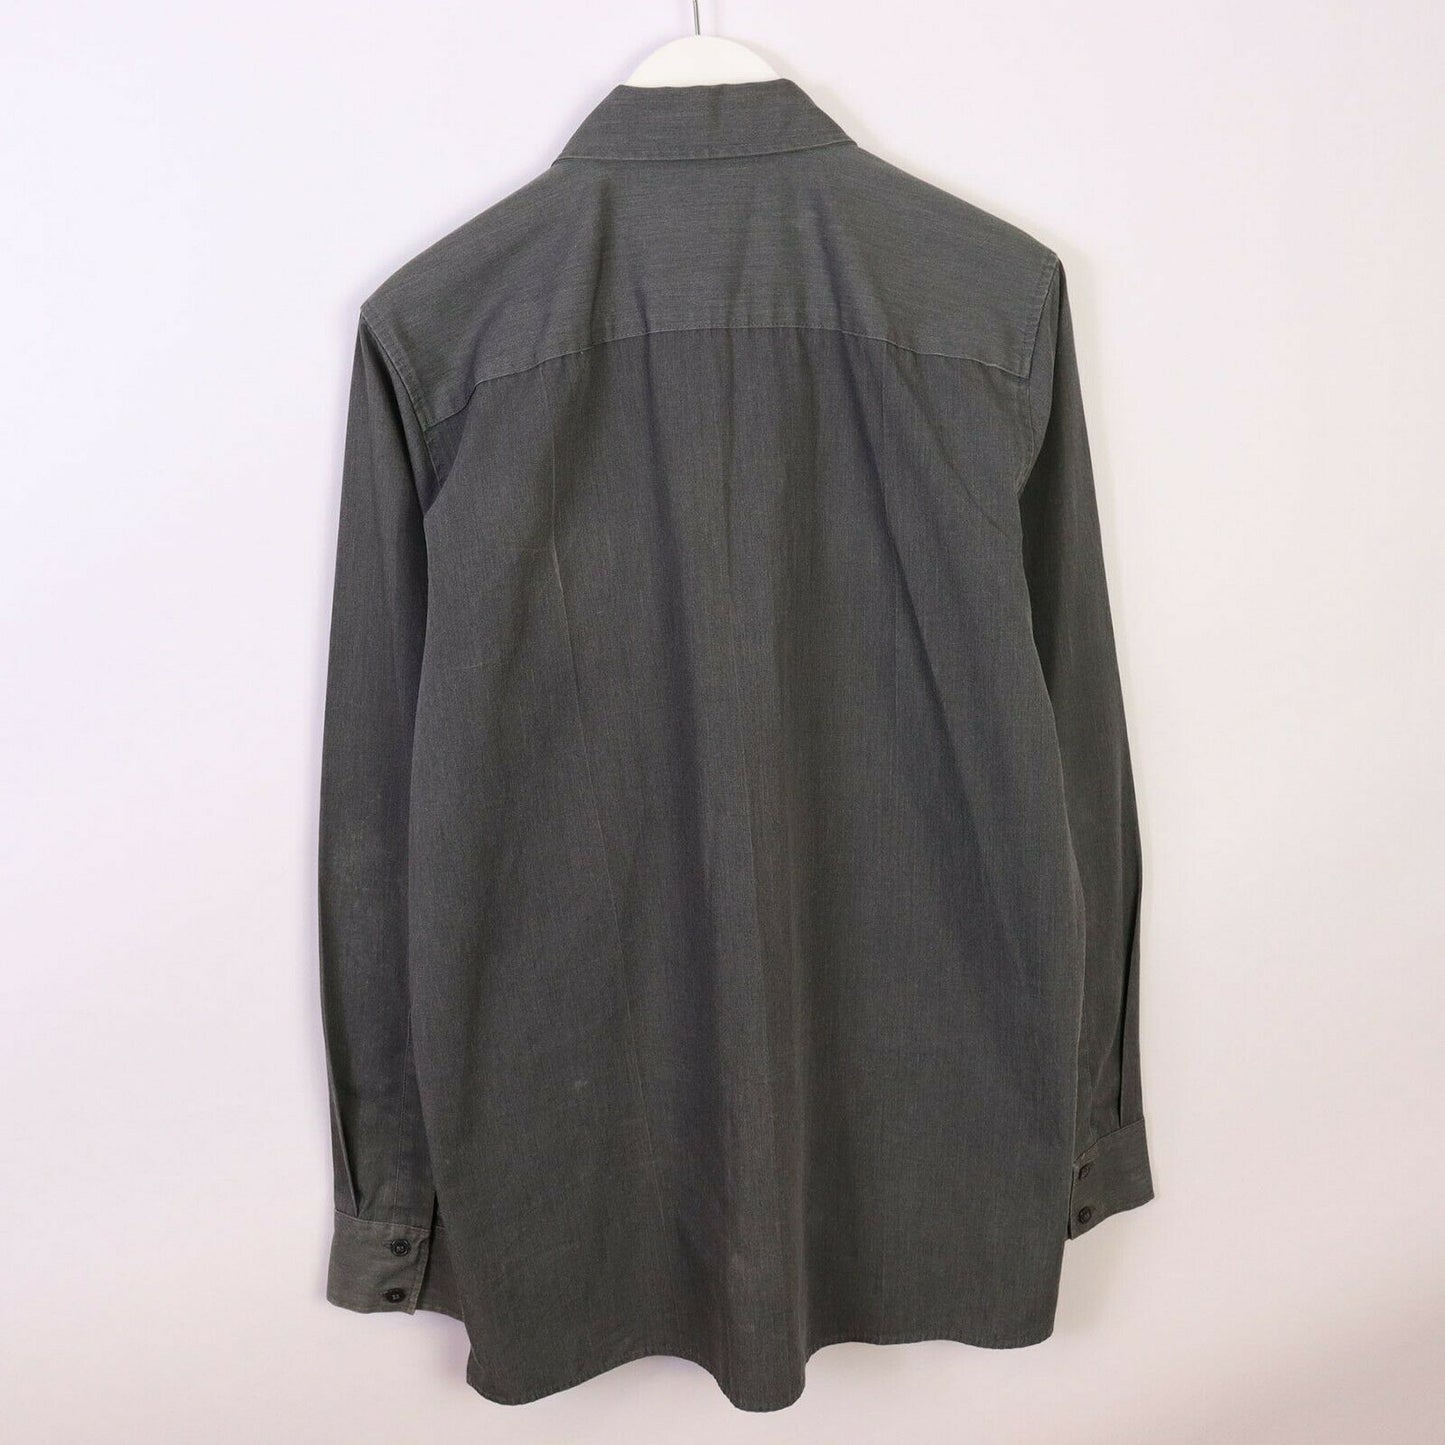 Vintage Levi’s Sta-Prest Shirt Size M